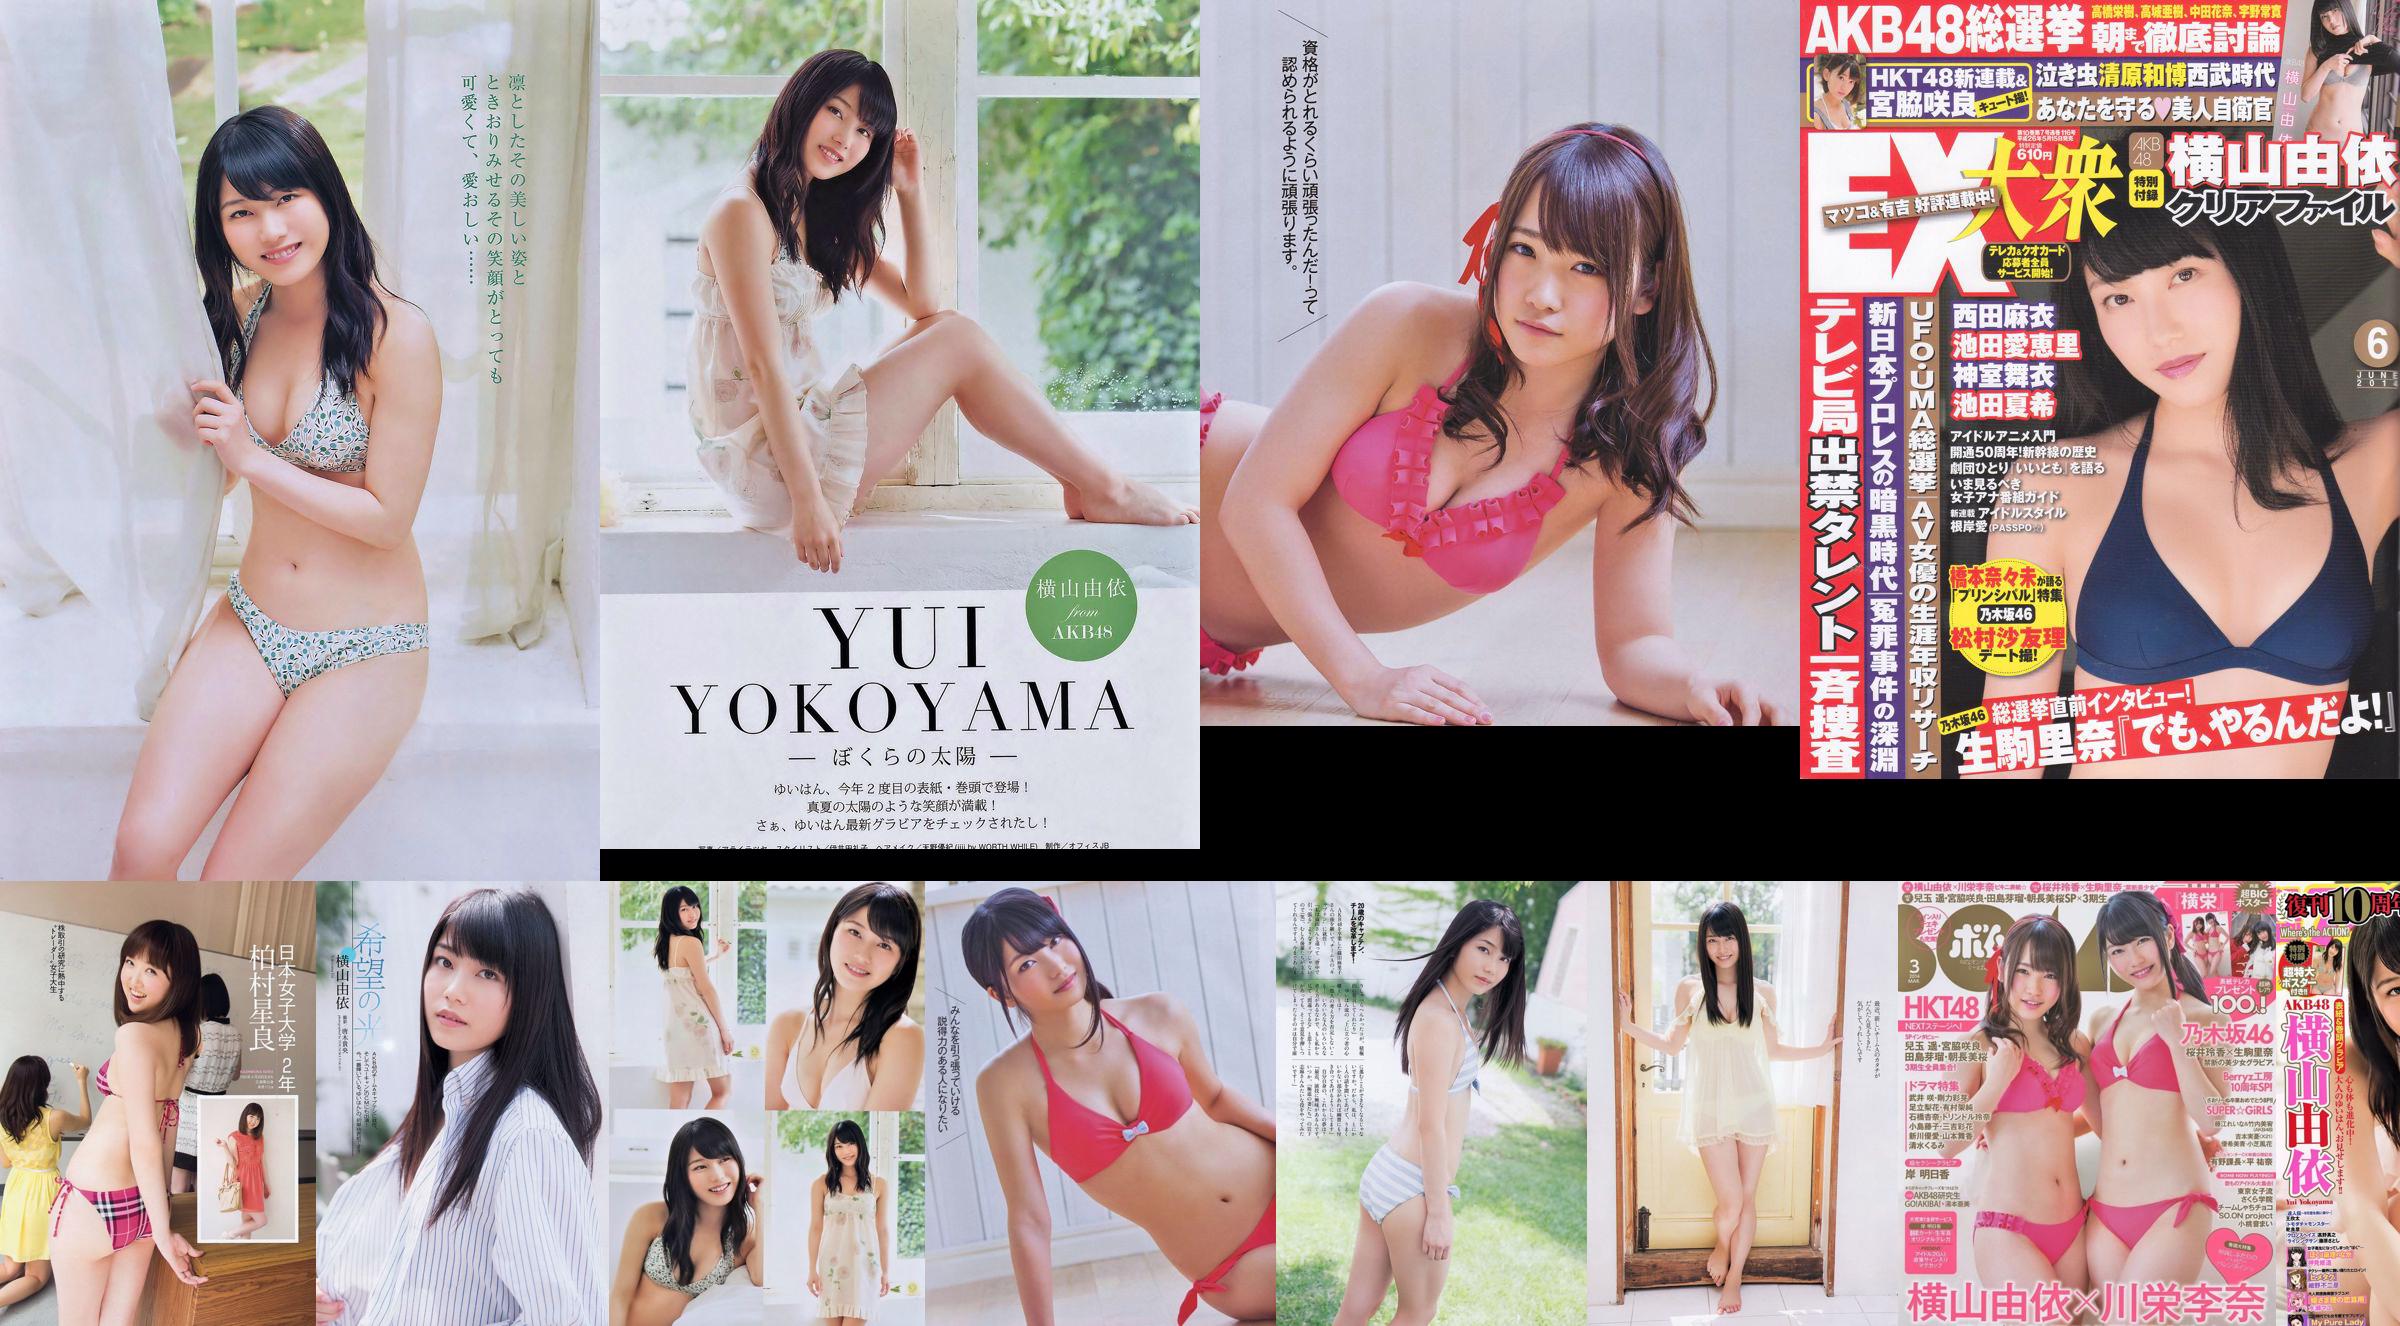 [EX Taishu] Yokoyama Yui, Miyawaki Sakura, Matsumura Sa Yuri 2014 nr 06 Photo Magazine No.8ad708 Strona 15